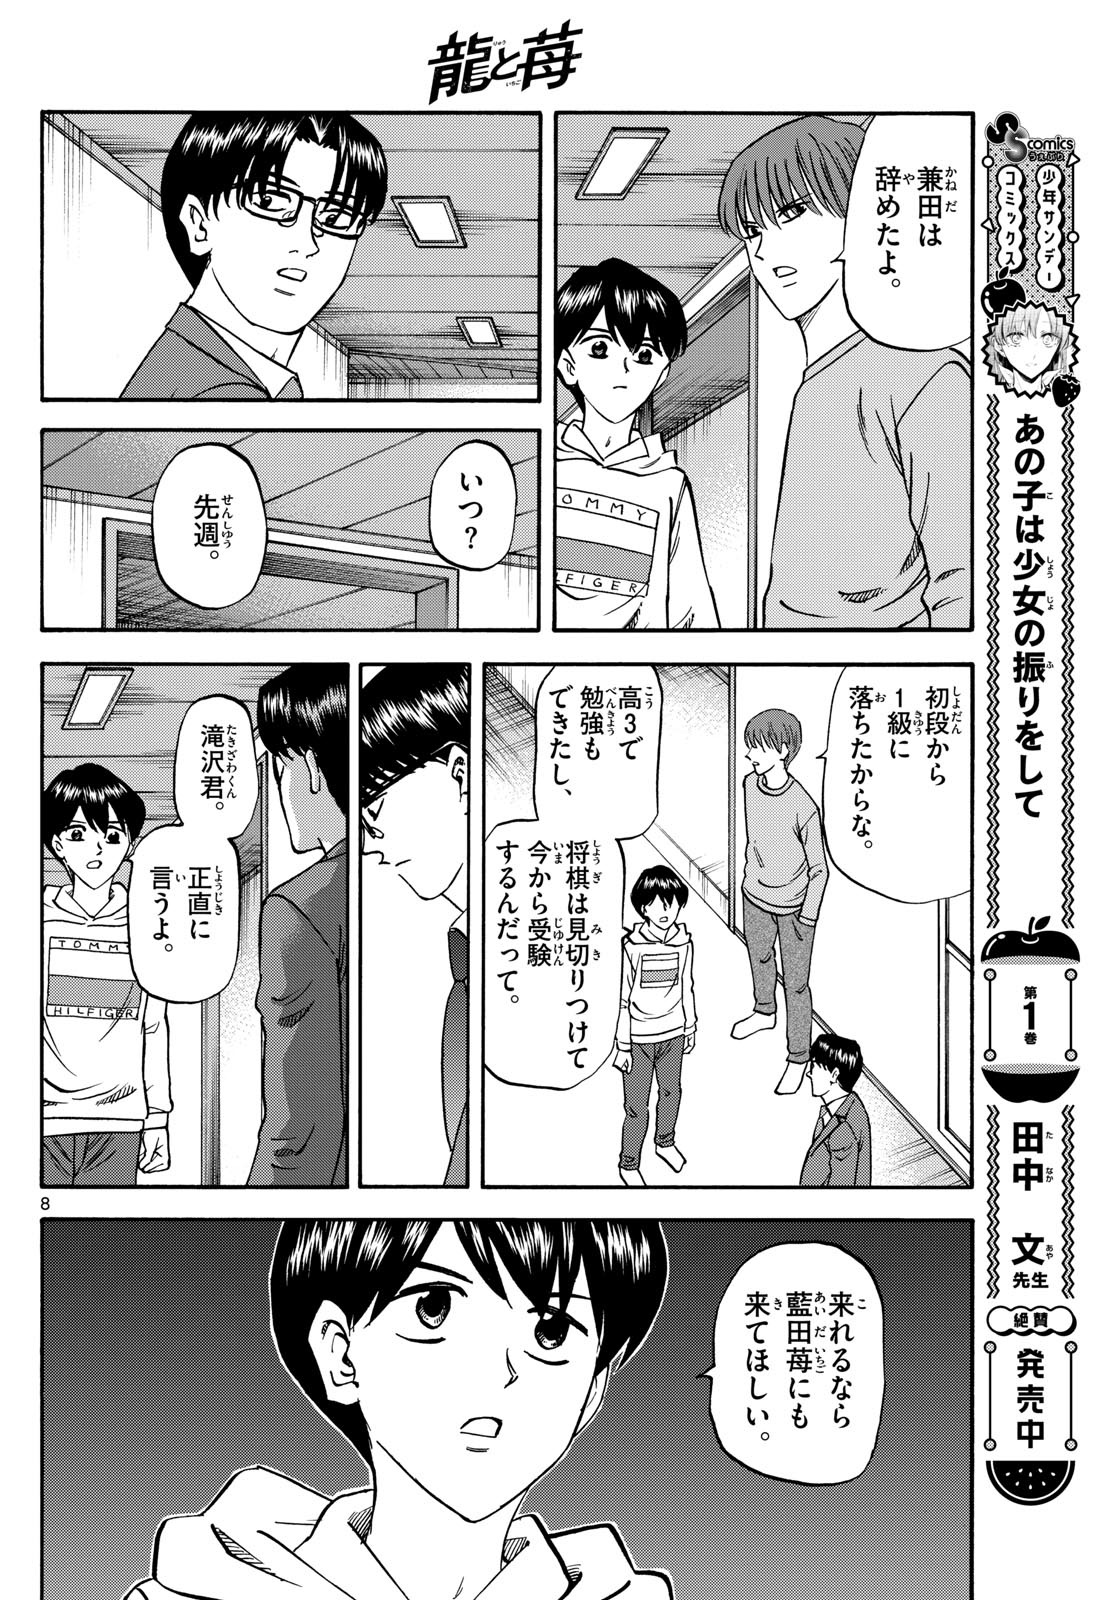 Tatsu to Ichigo - Chapter 172 - Page 8